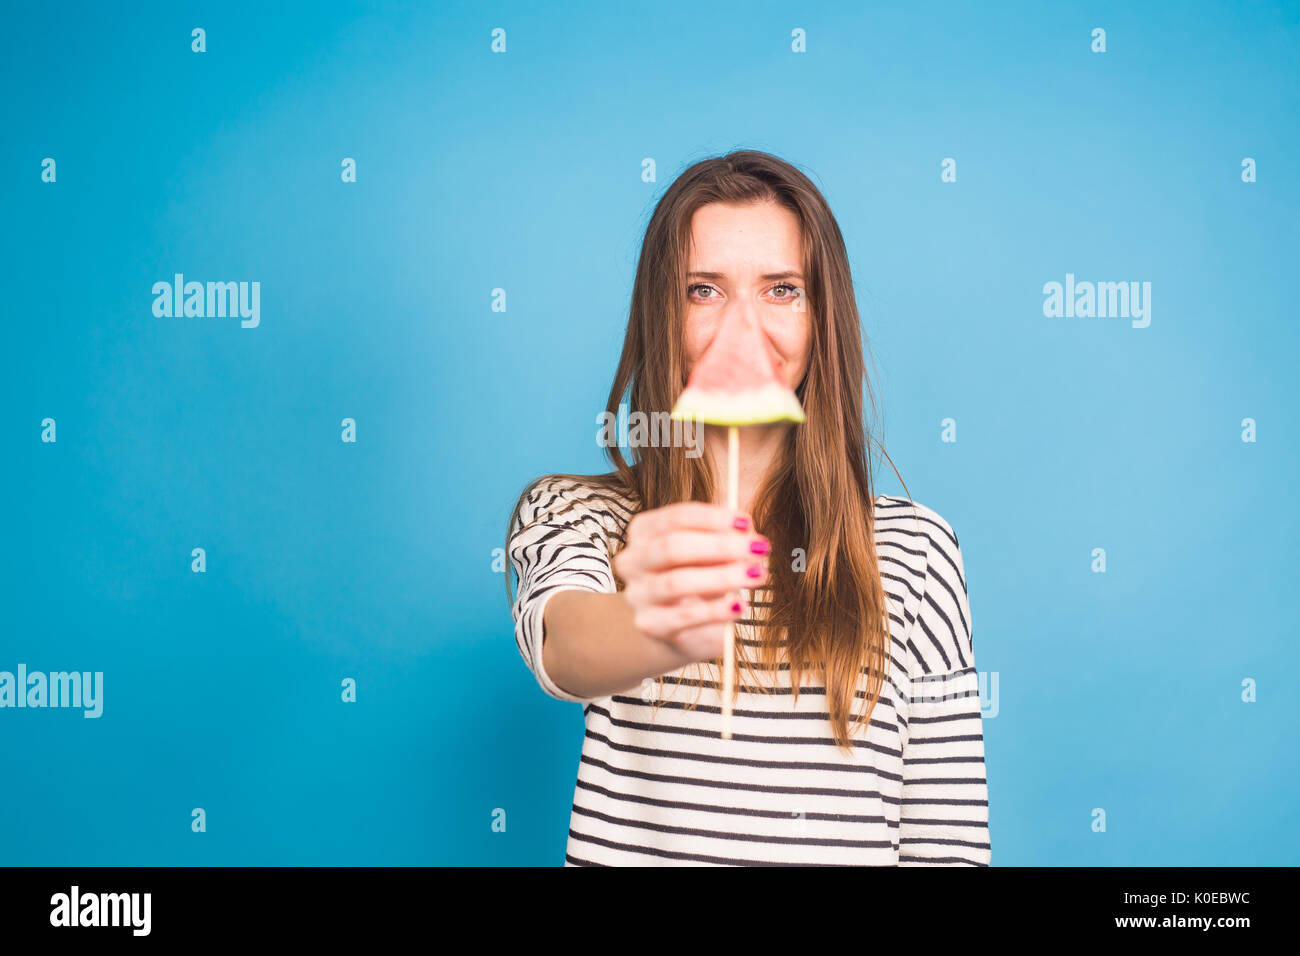 Estate, vacanze, dieta e vegani concetto - Bella sorridente giovane donna holding anguria fetta su stick Foto Stock